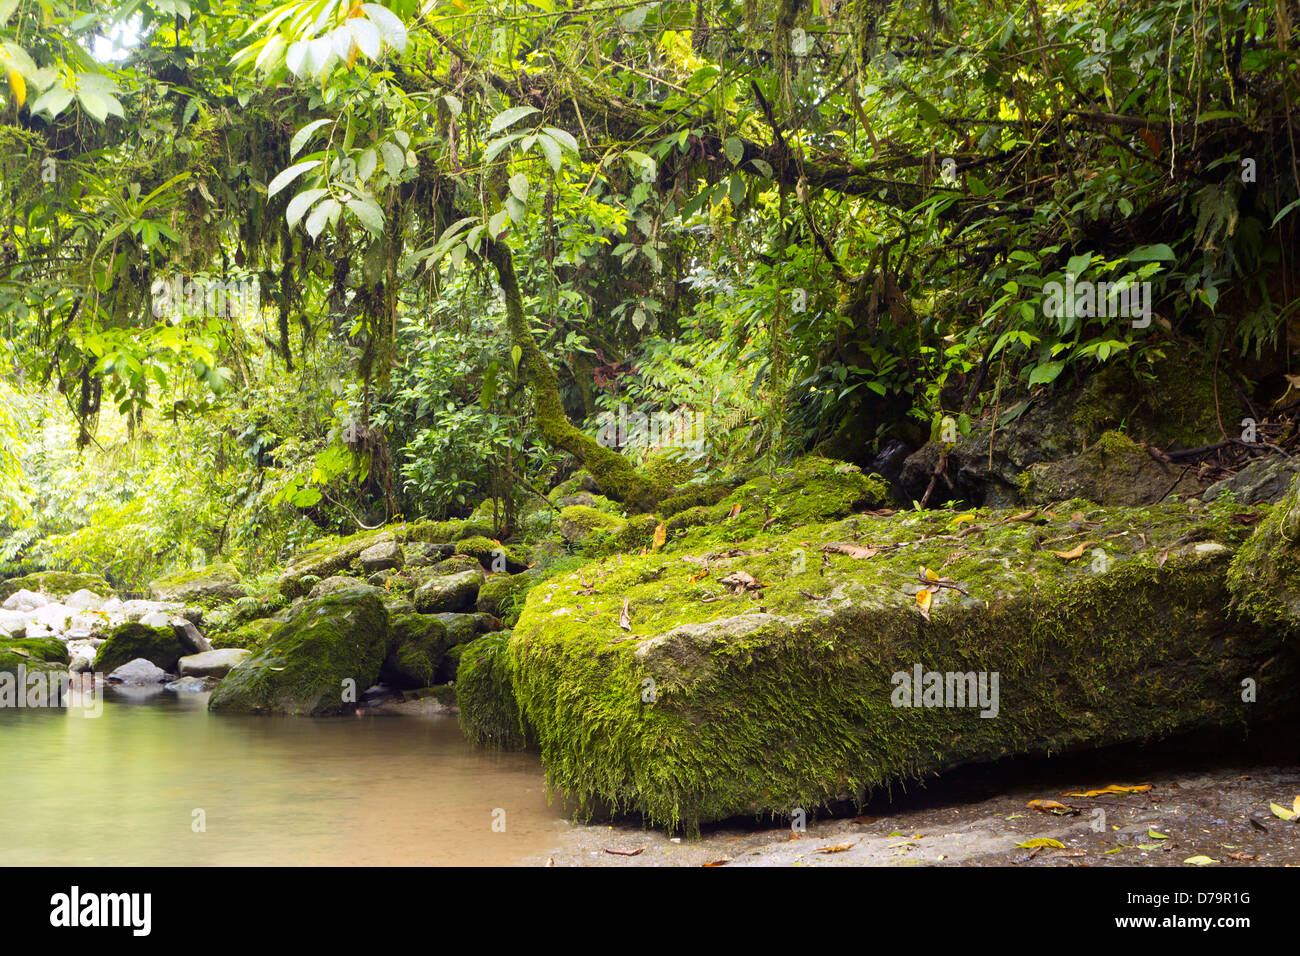 Kalkstein Blöcke Teil der Hollin Bildung am Fluss in der ecuadorianischen Amazonas Regenwald Stockfoto